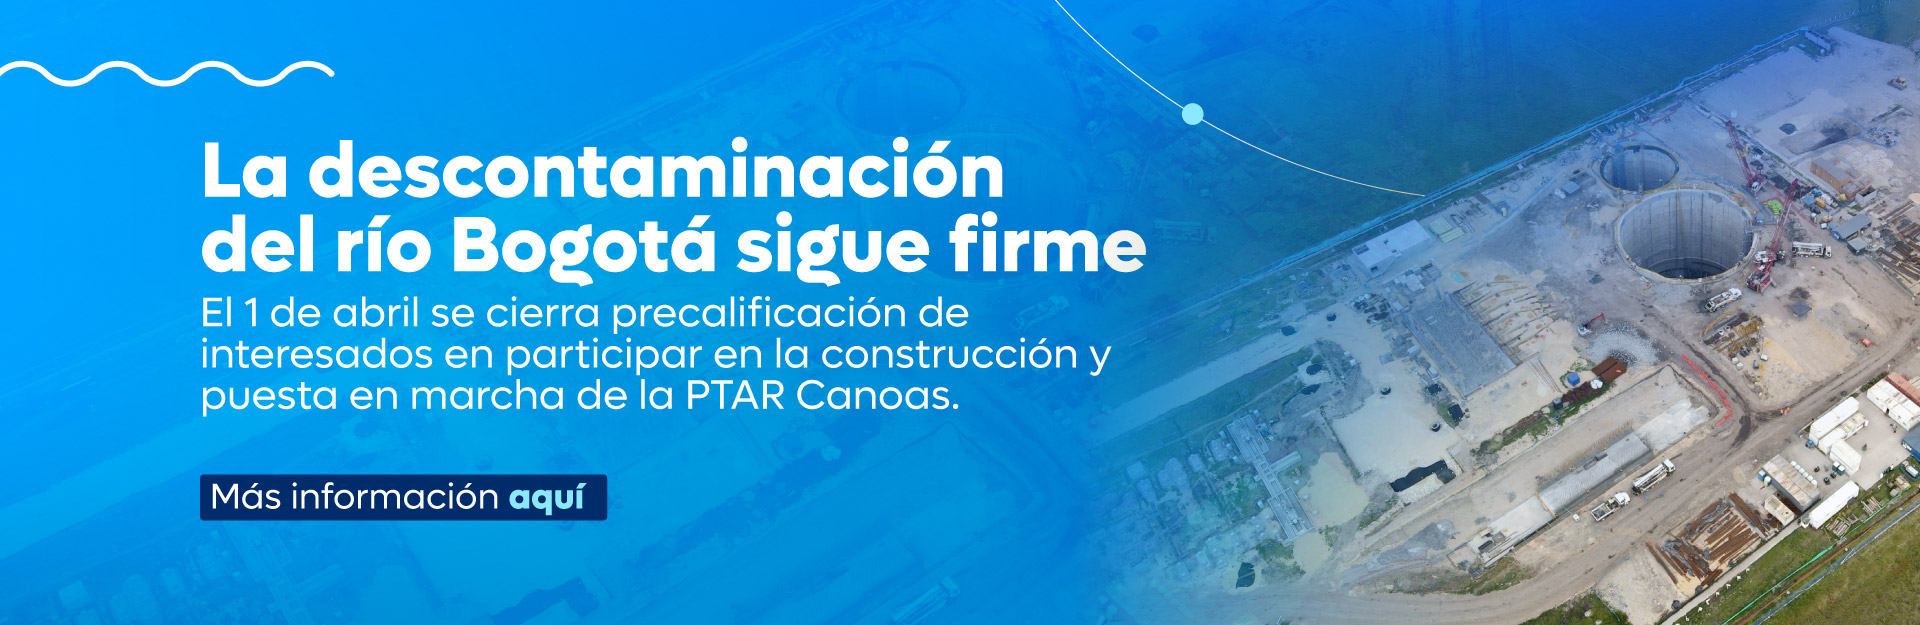 La descontaminación del río Bogotá sigue firme: El 1 de abril se cierra precalificación de interesados en participar en la construcción y puesta en marcha de la PTAR Canoas